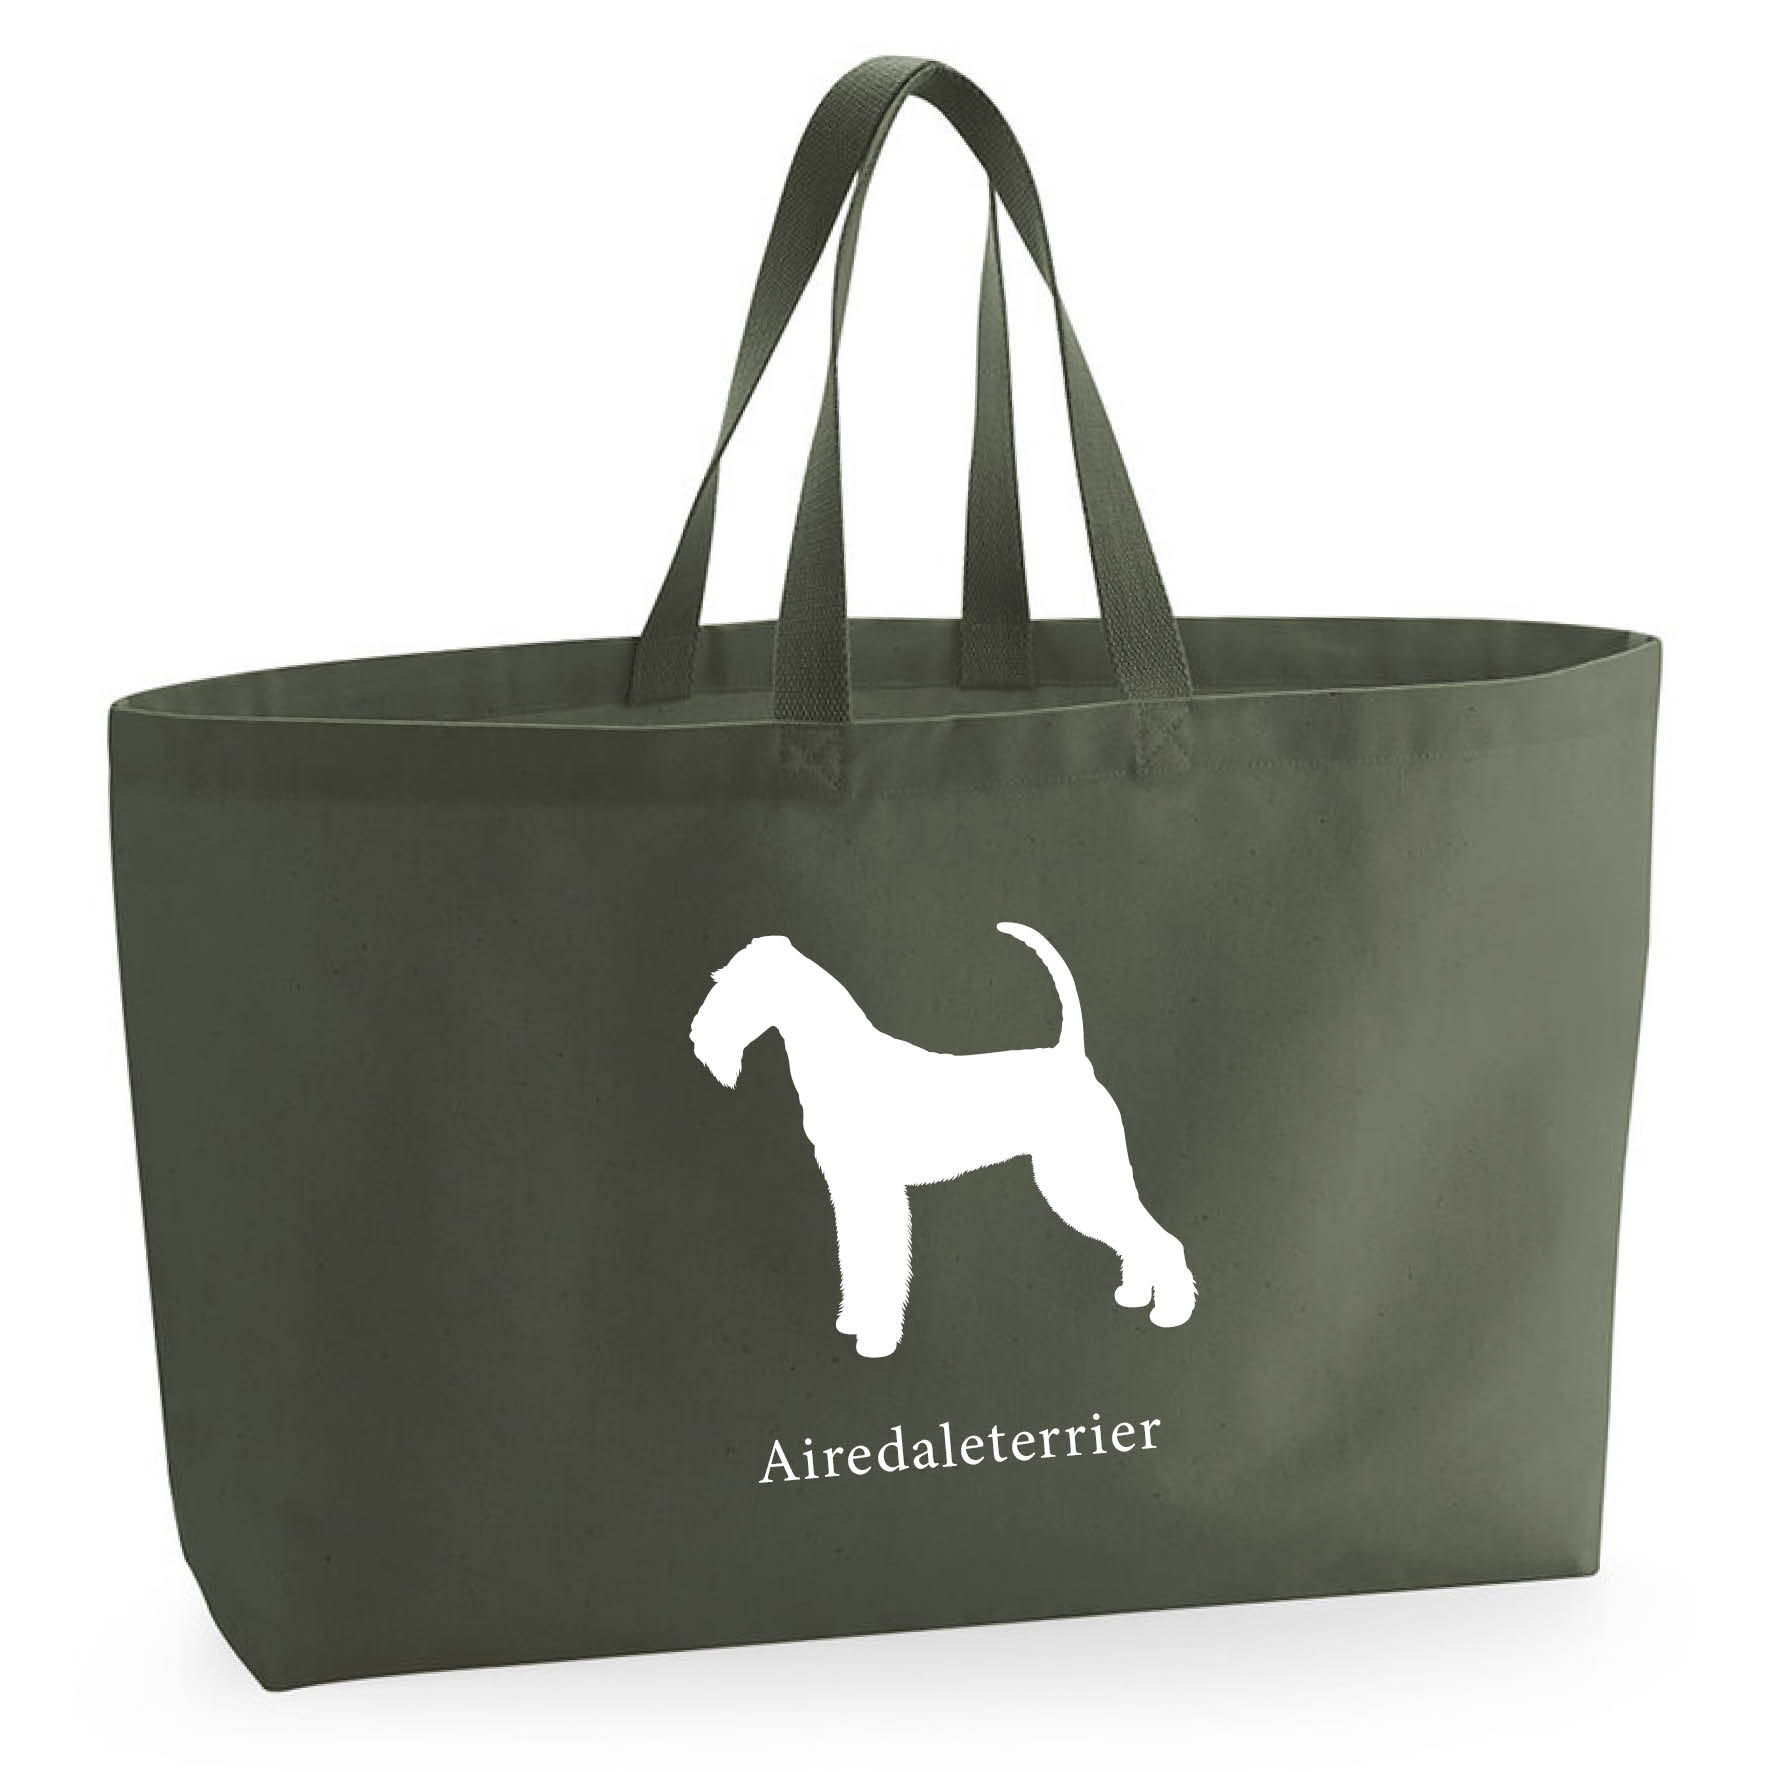 Tygkasse Airedaleterrier - Oversized bag